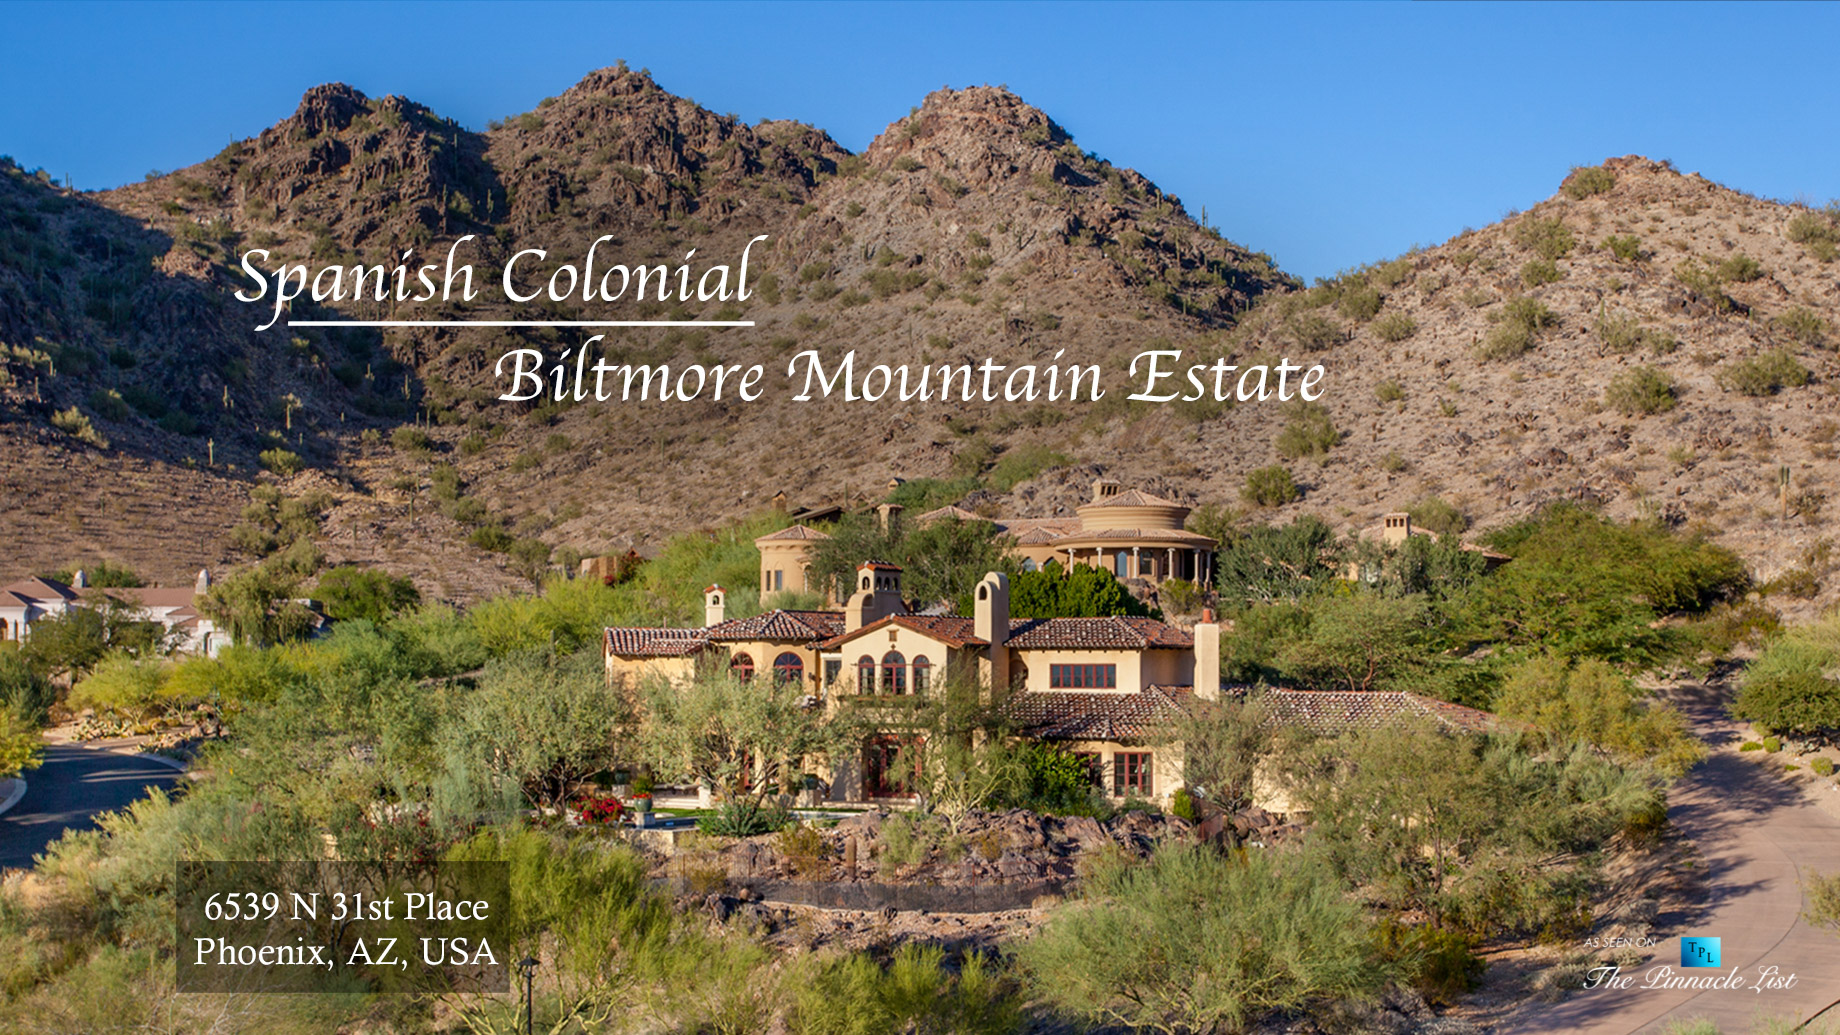 Spanish Colonial Biltmore Mountain Estate – 6539 N 31st Pl, Phoenix, AZ, USA